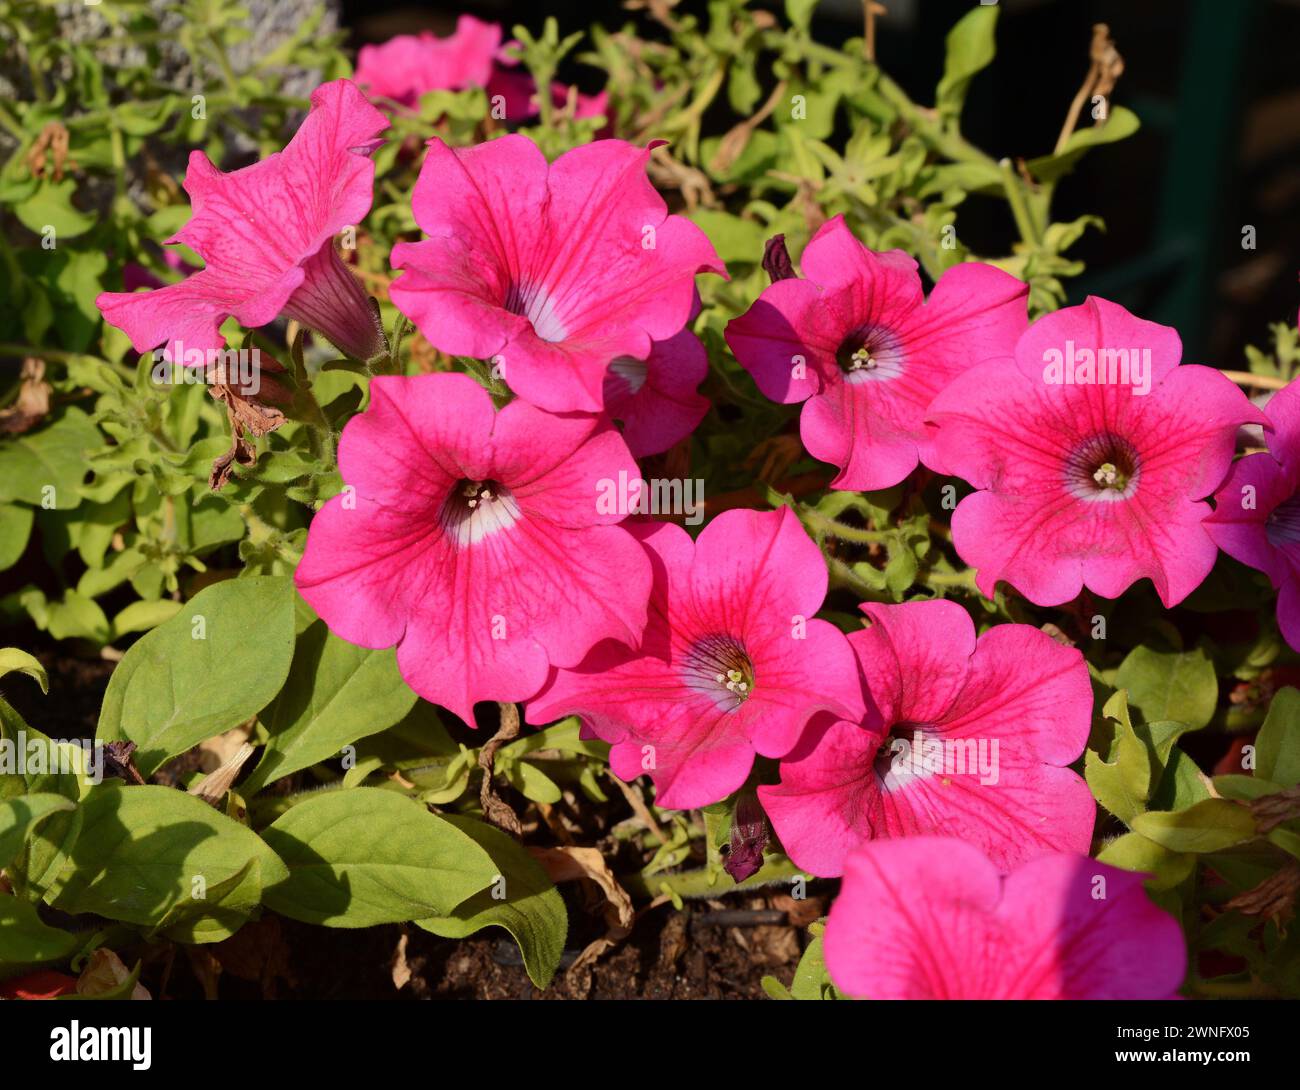 Eine Petunienpflanze mit Blumen. Petunie, Petunie im Tablett, Petunie im Topf, mehrfarbige Petunie Stockfoto